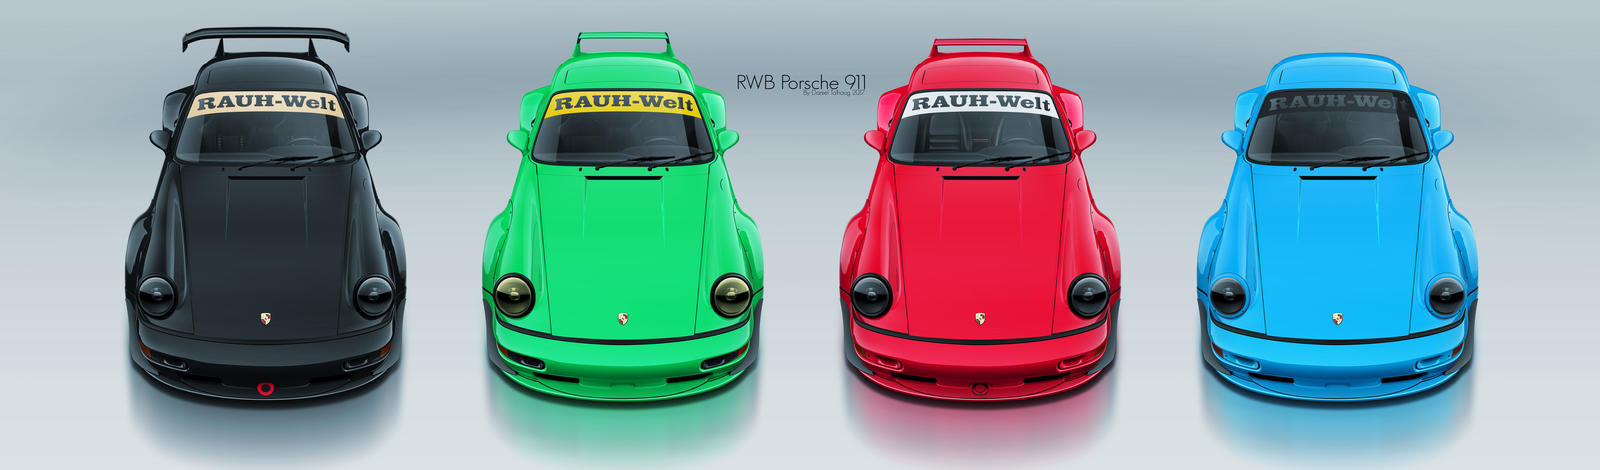 RAUH-Welt BEGRIFF Porsche 911 x4